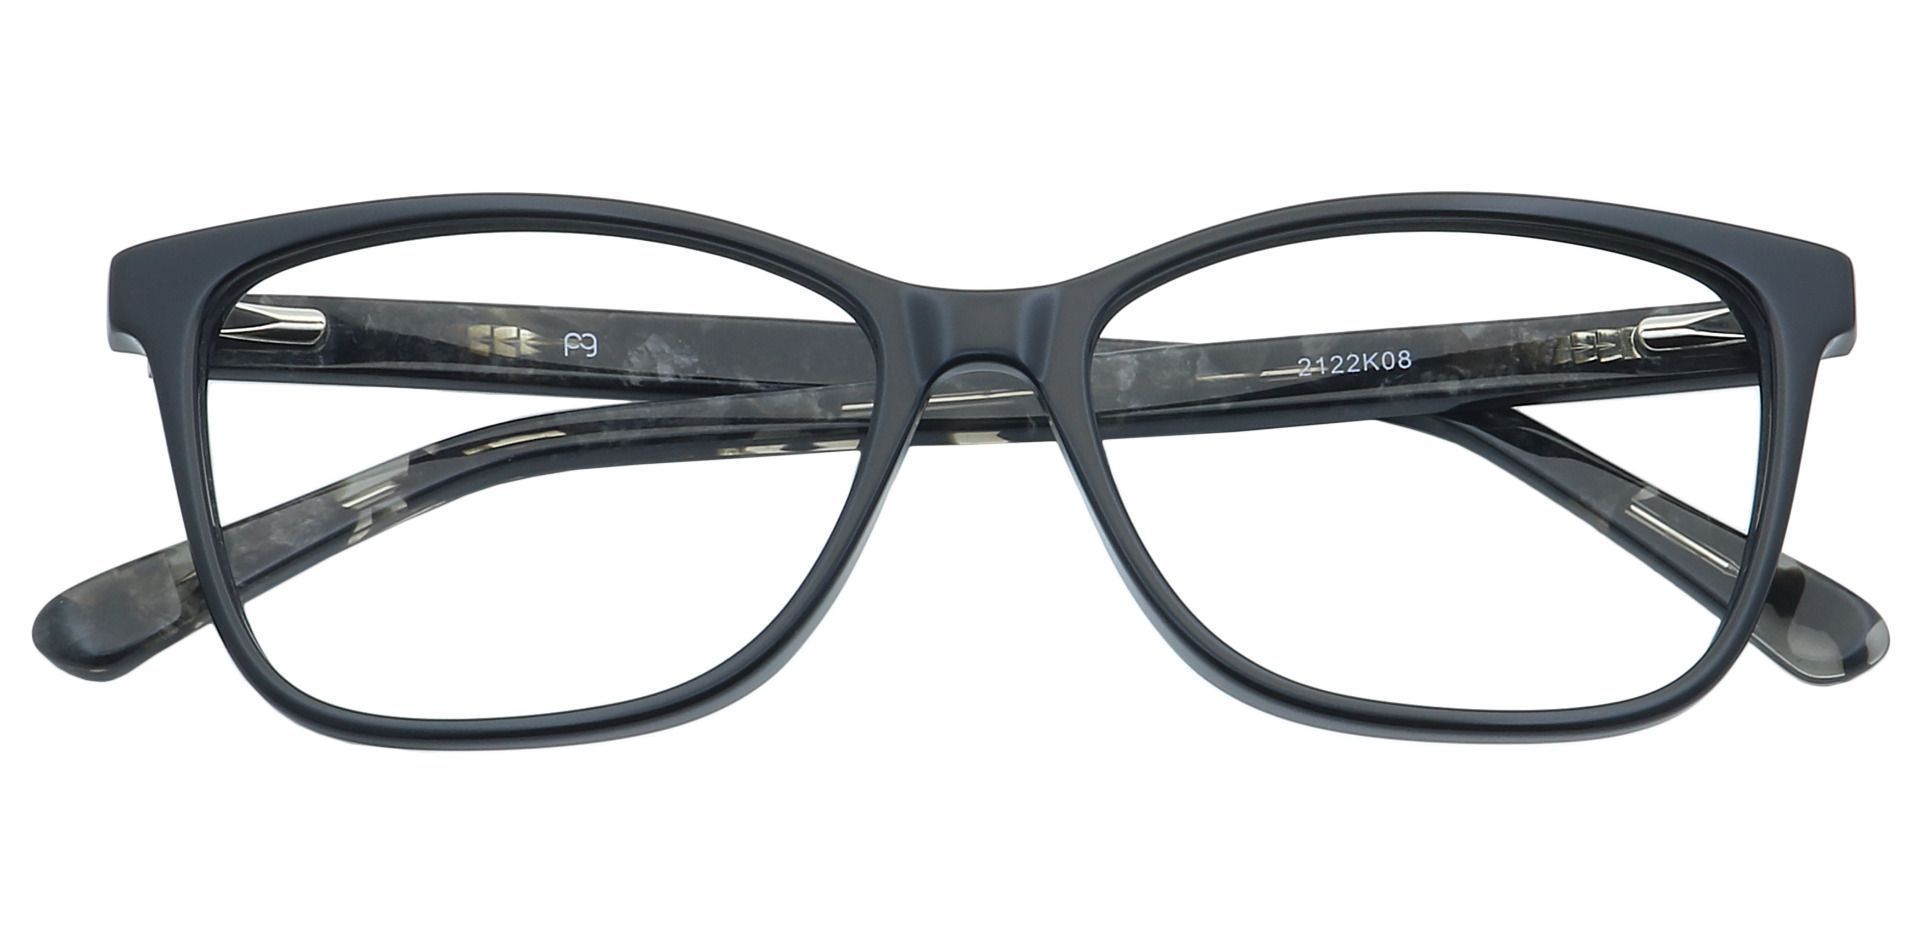 Casper Rectangle Non-Rx Glasses - Black